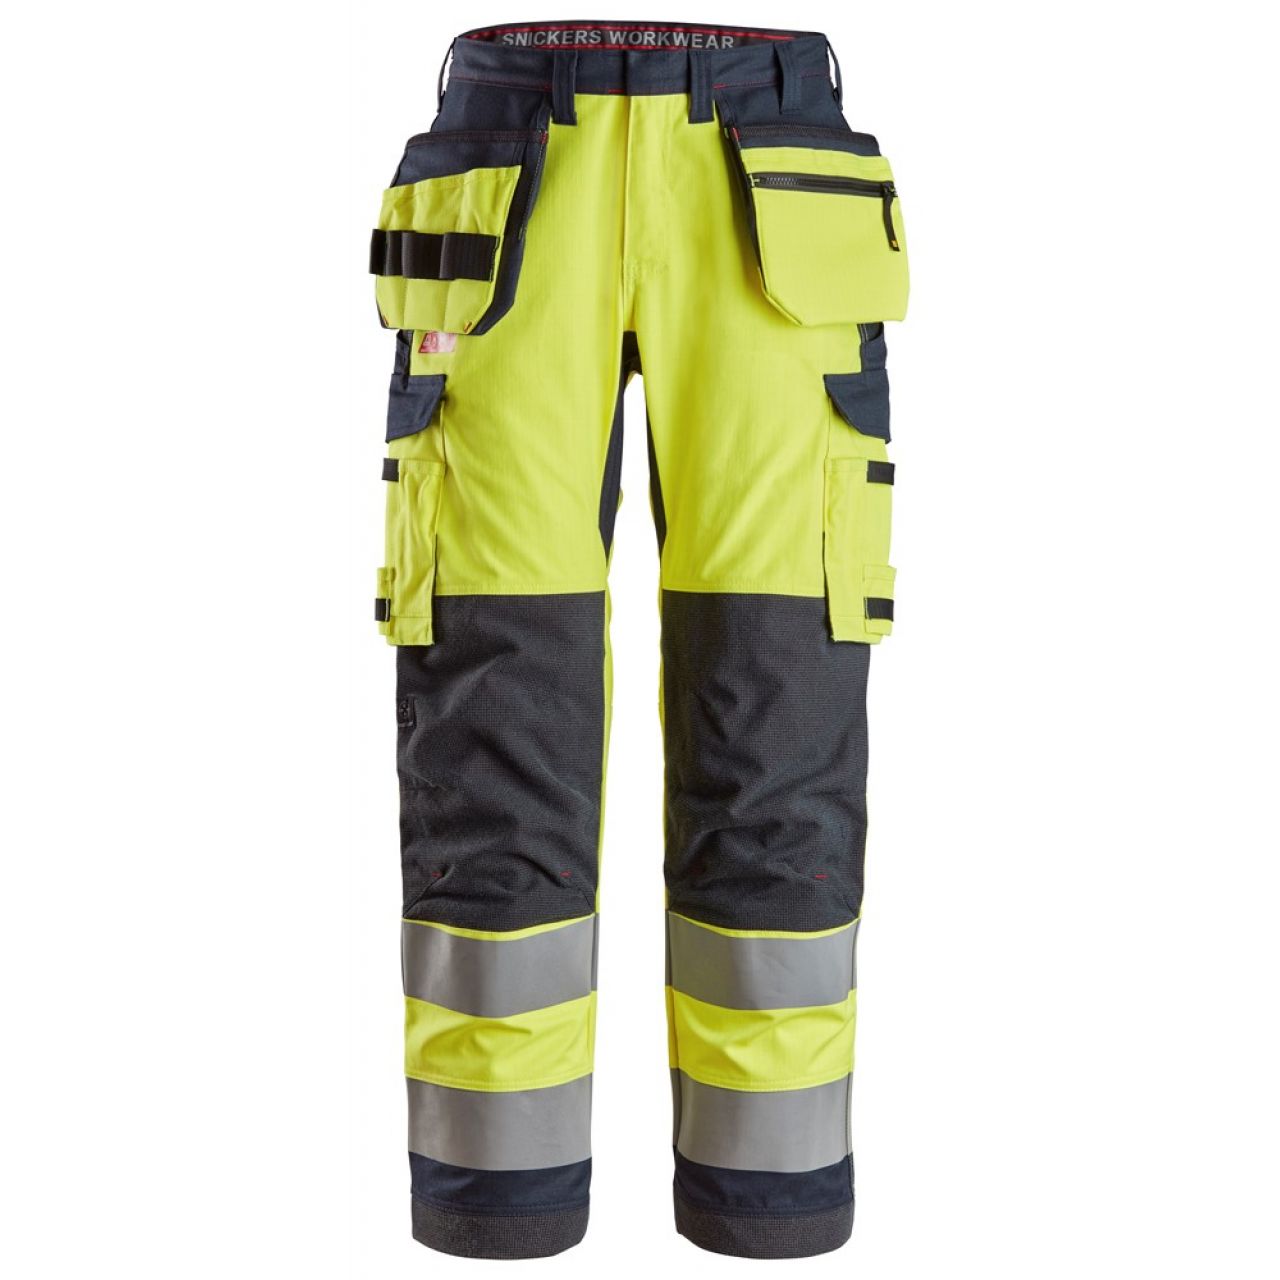 6261 Pantalones largos de trabajo de alta visibilidad clase 2 con bolsillos flotantes simétricos ProtecWork amarillo-azul marino talla 54